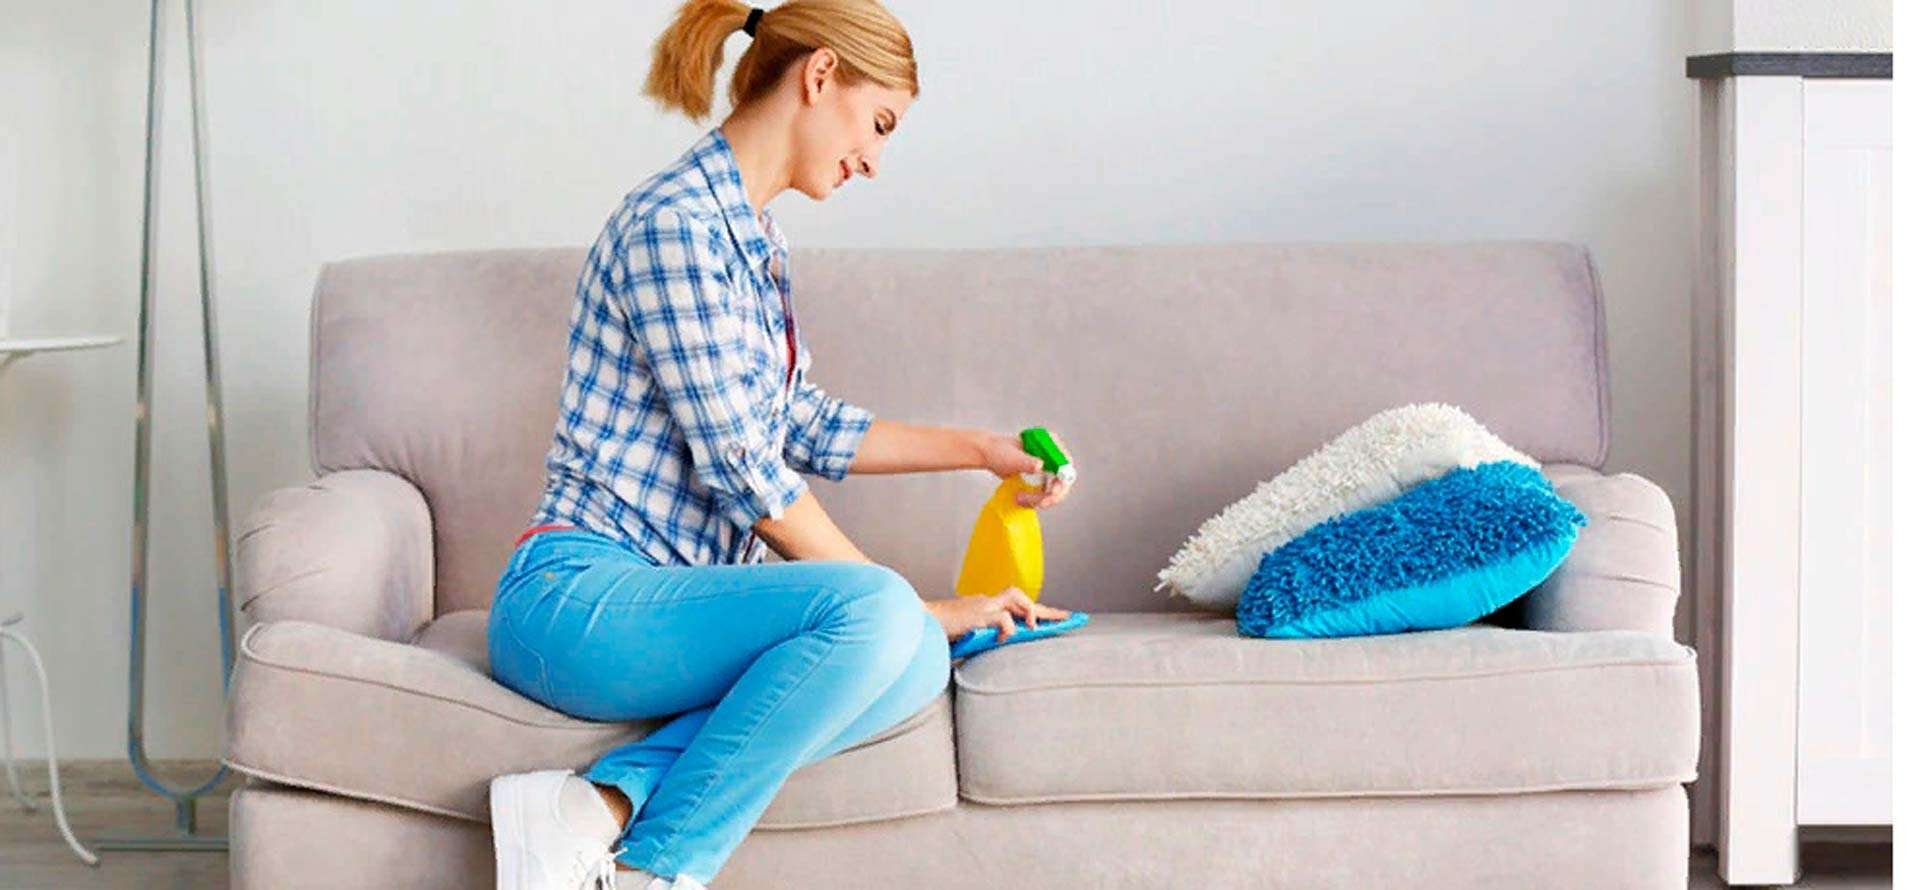 Clean диван. Химчистка диванов и ковров. Девушка чистит диван. Самостоятельная чистка мебели. Пятно на диване.